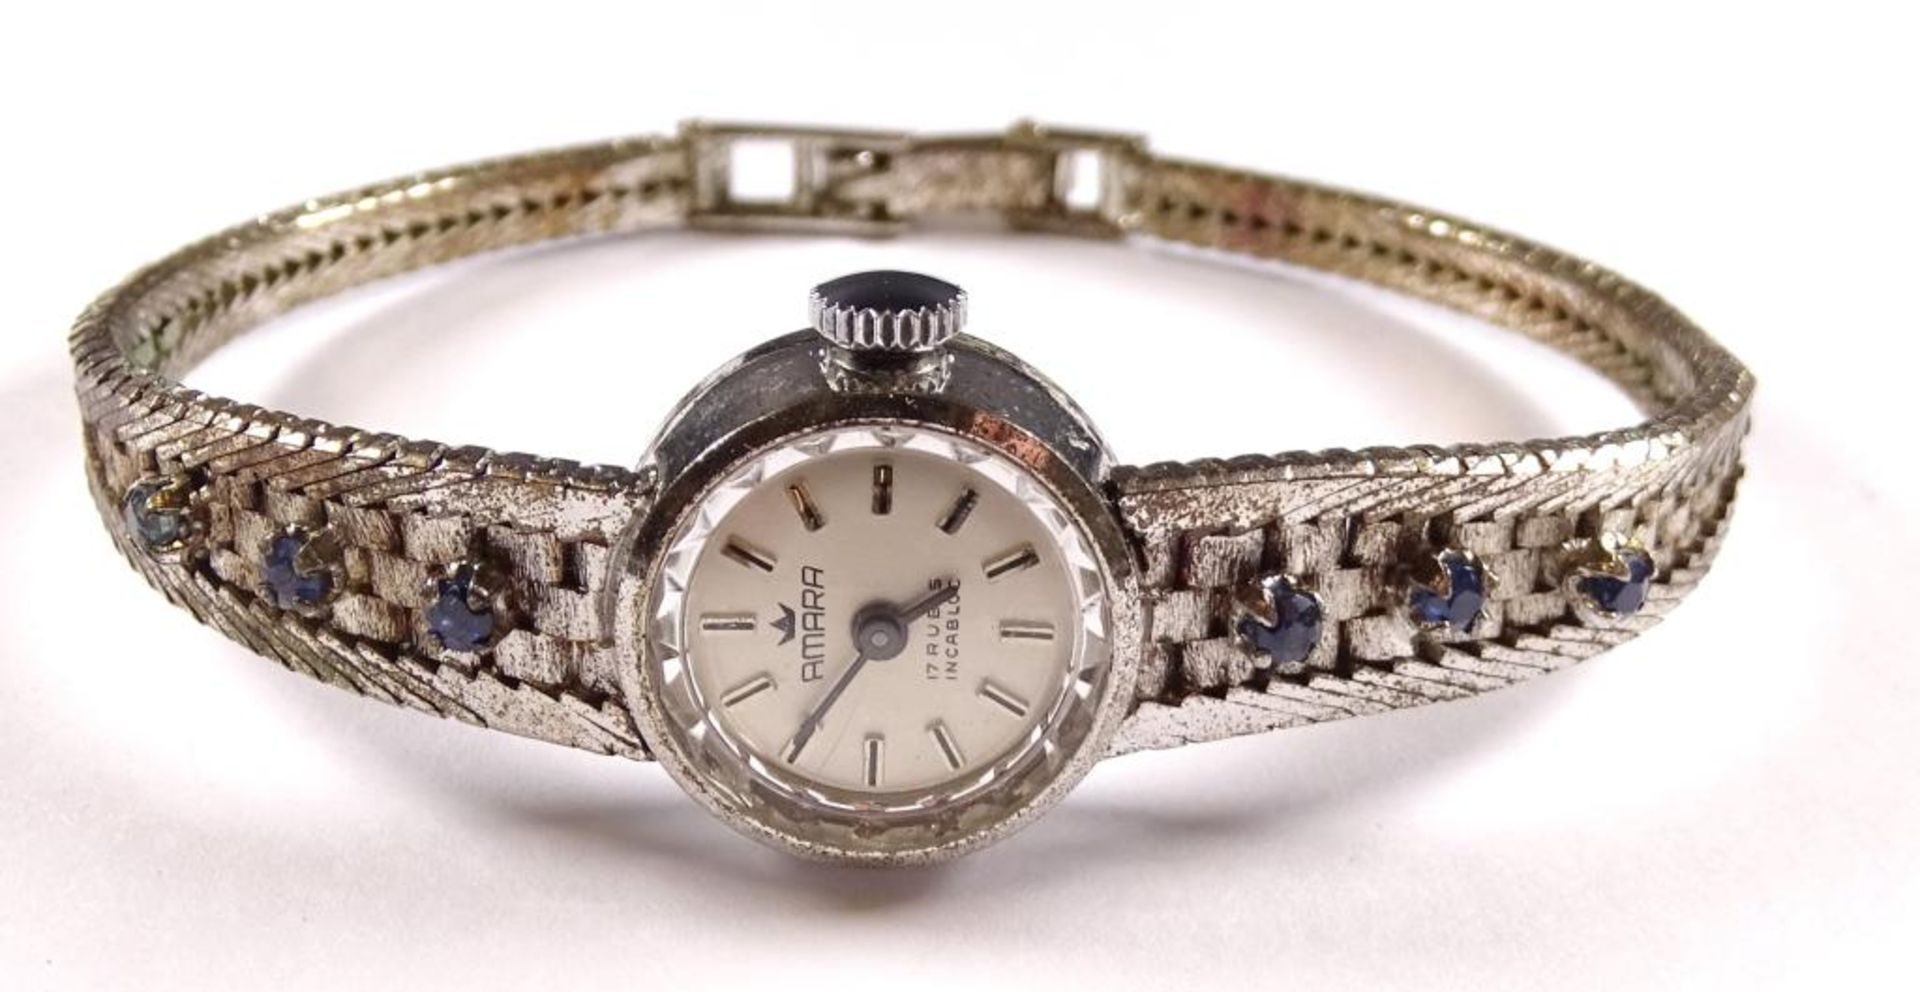 Damen Armbanduhr,"Amara",Handaufzug,Werk steht,Silber -835- besetzt mit Saphiren,ges.gew.20,8gr.